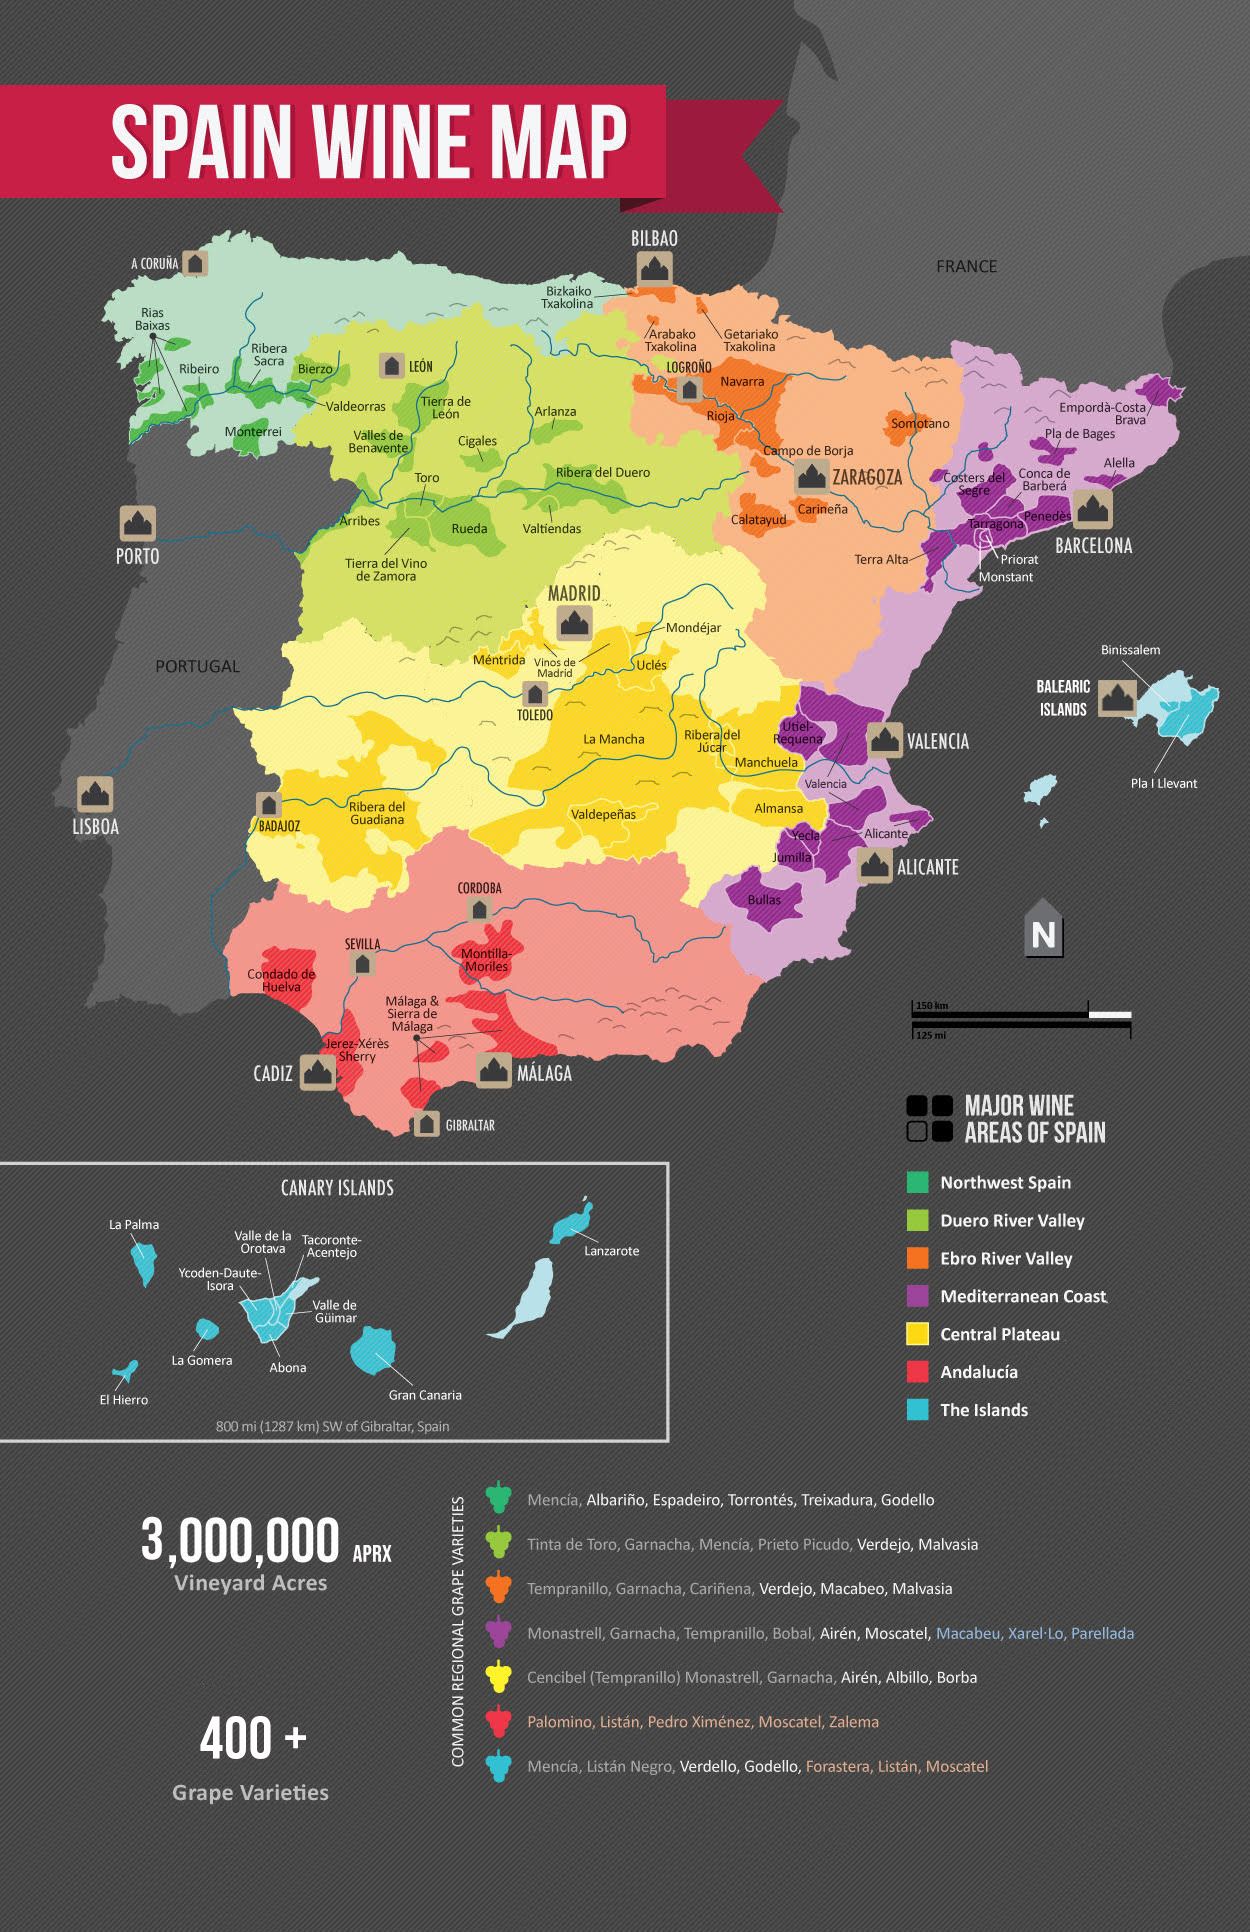 Spanish Wine Regions